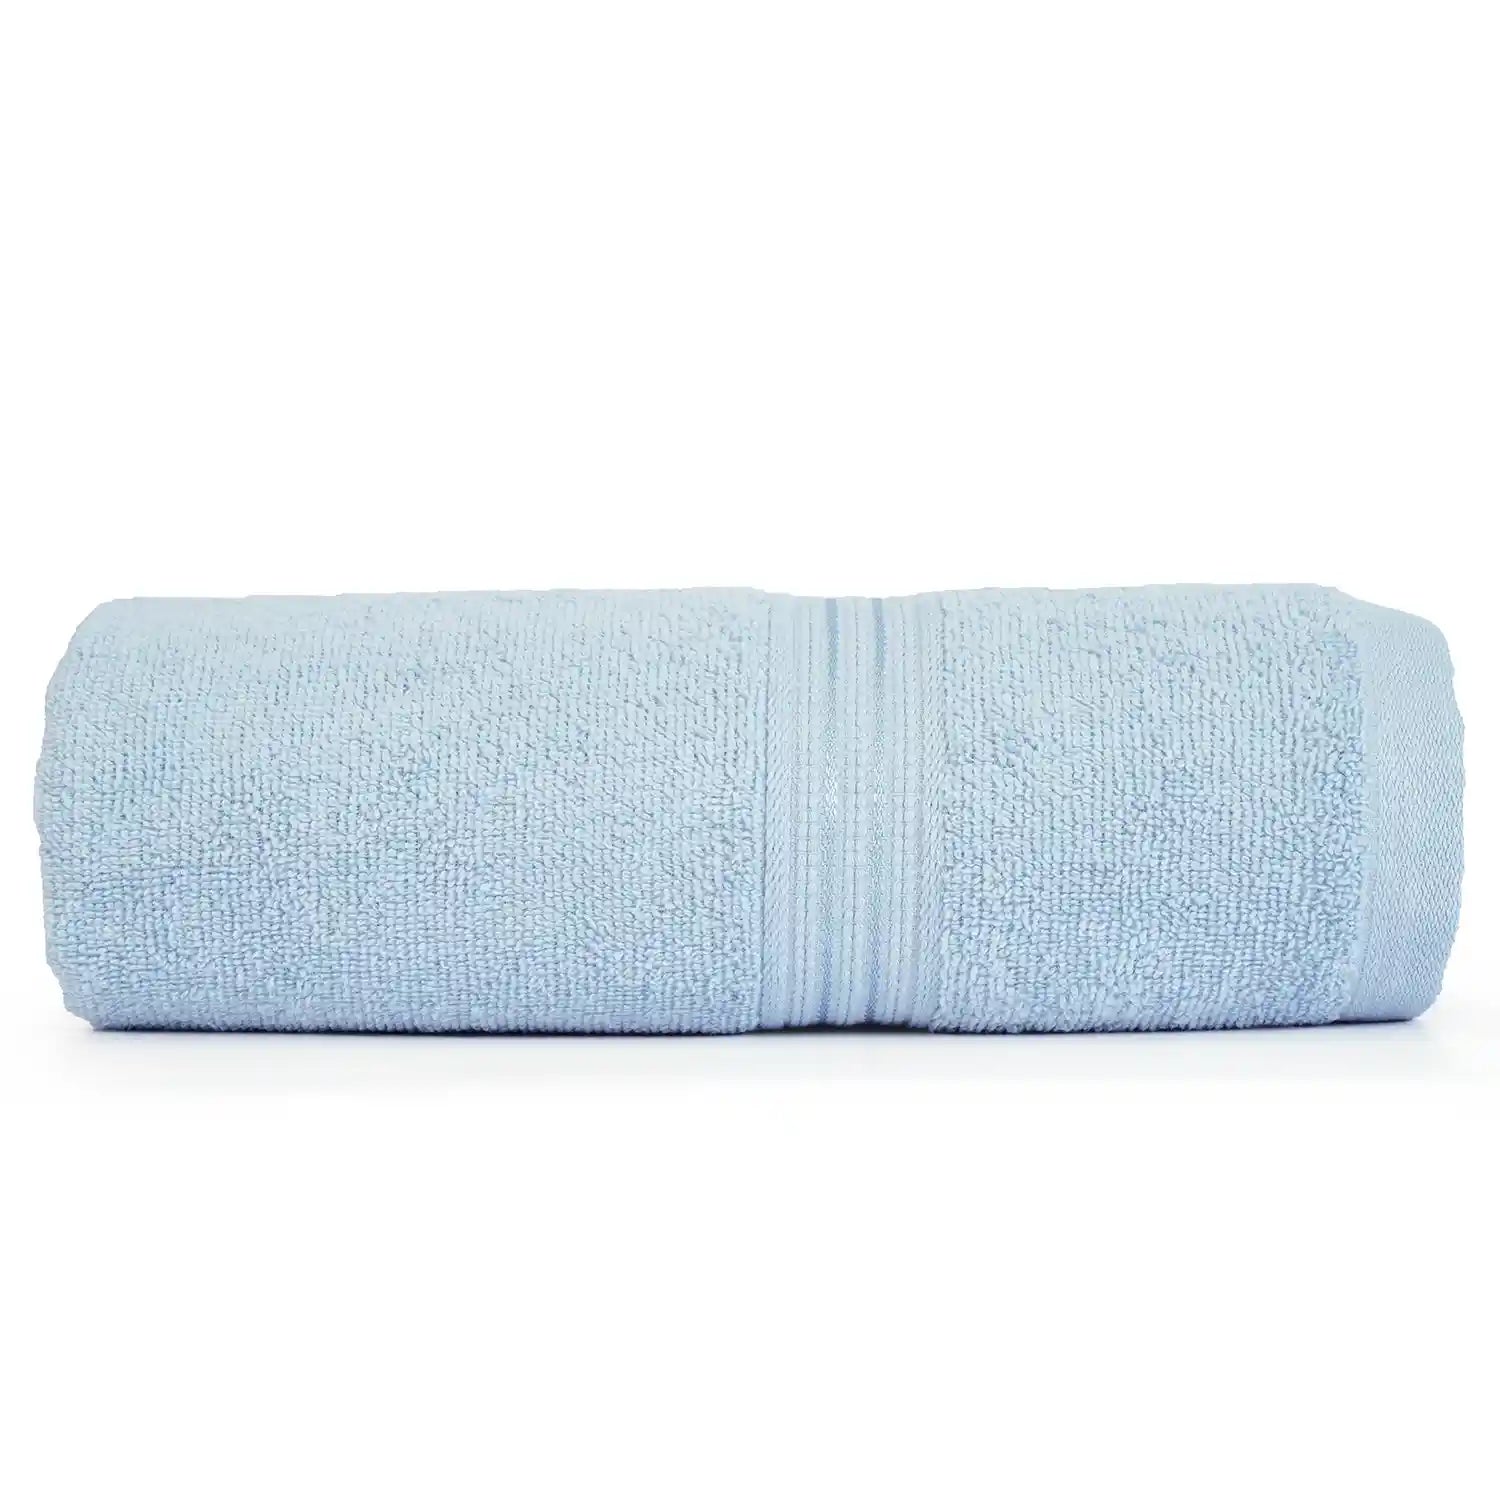 Bath towel, bamboo towel, banana towel, bath towel